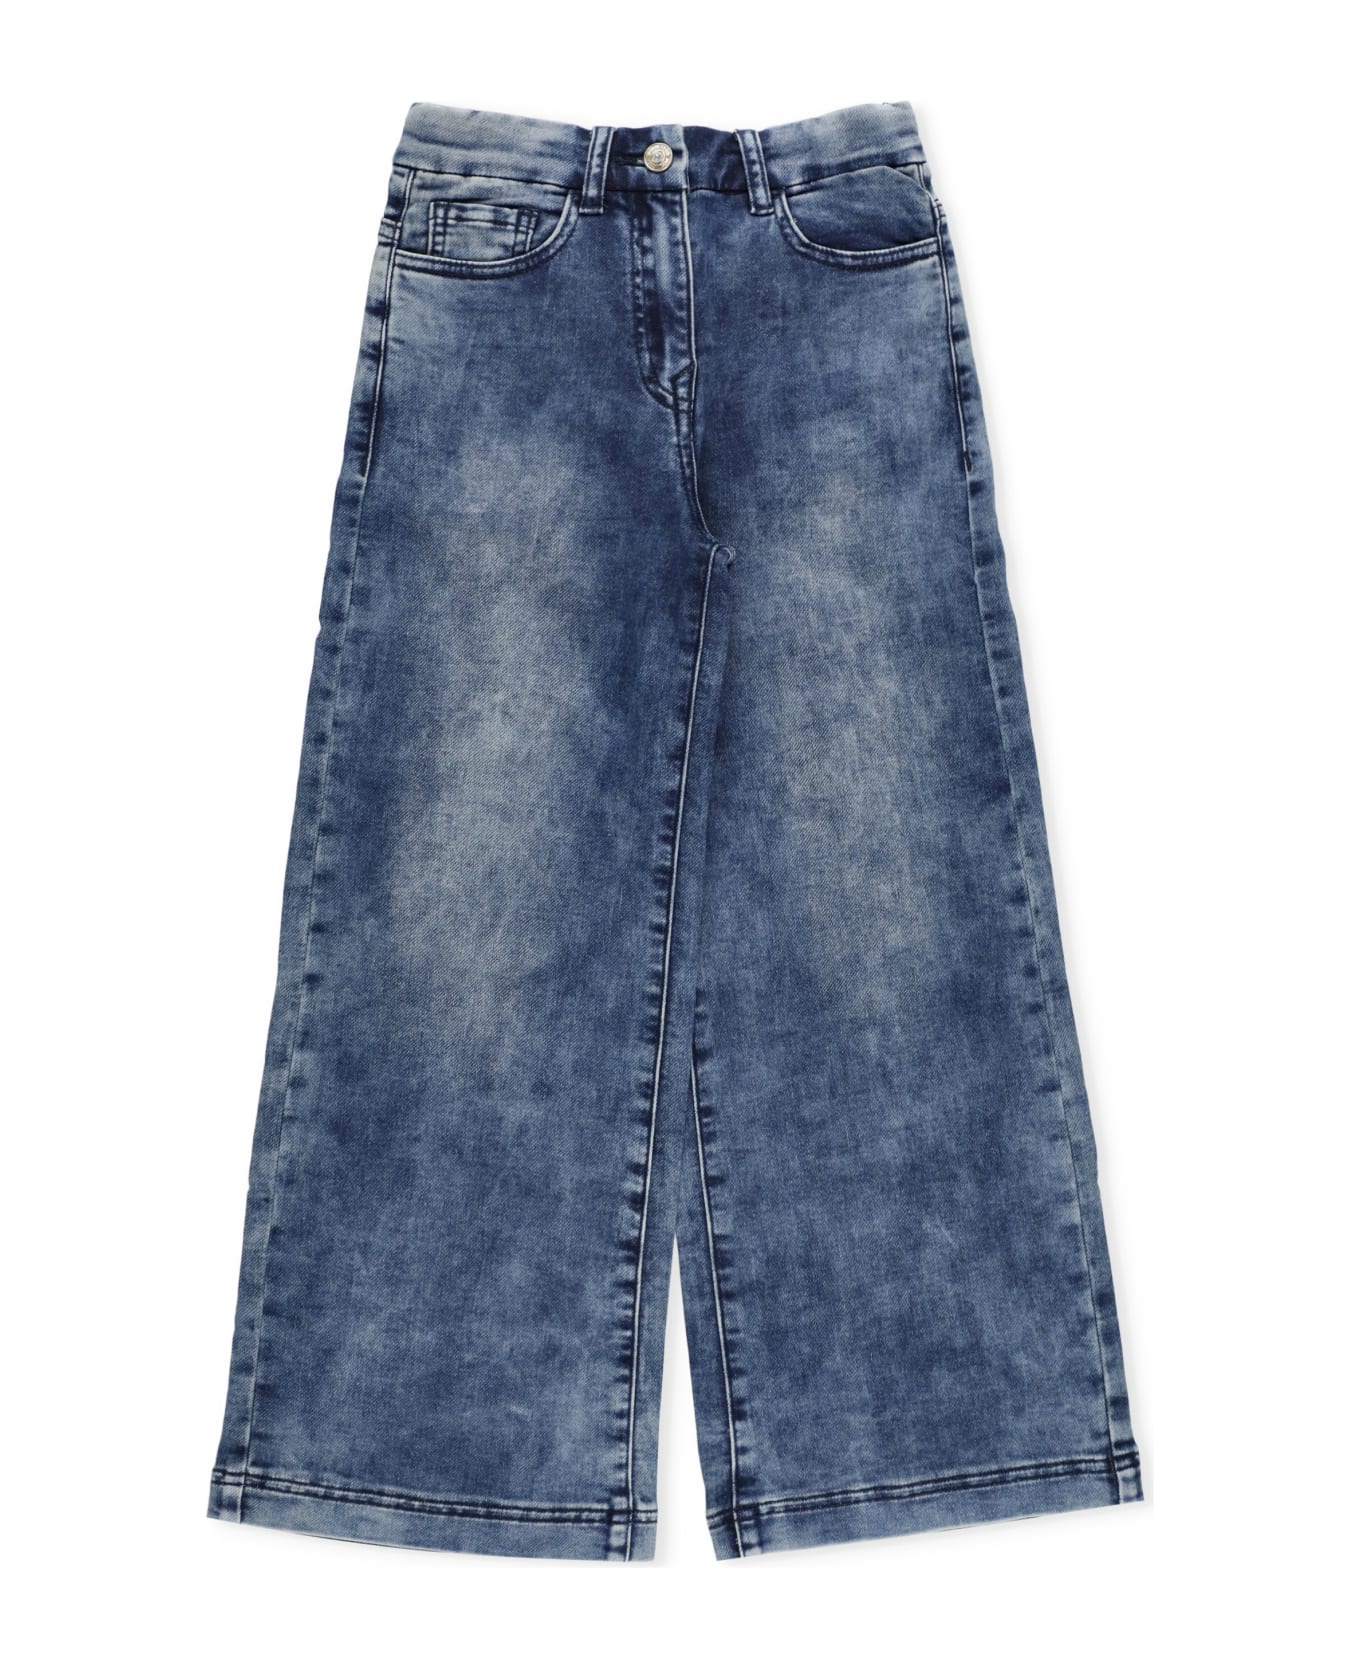 Monnalisa Cotton Jeans - DENIM BLUE